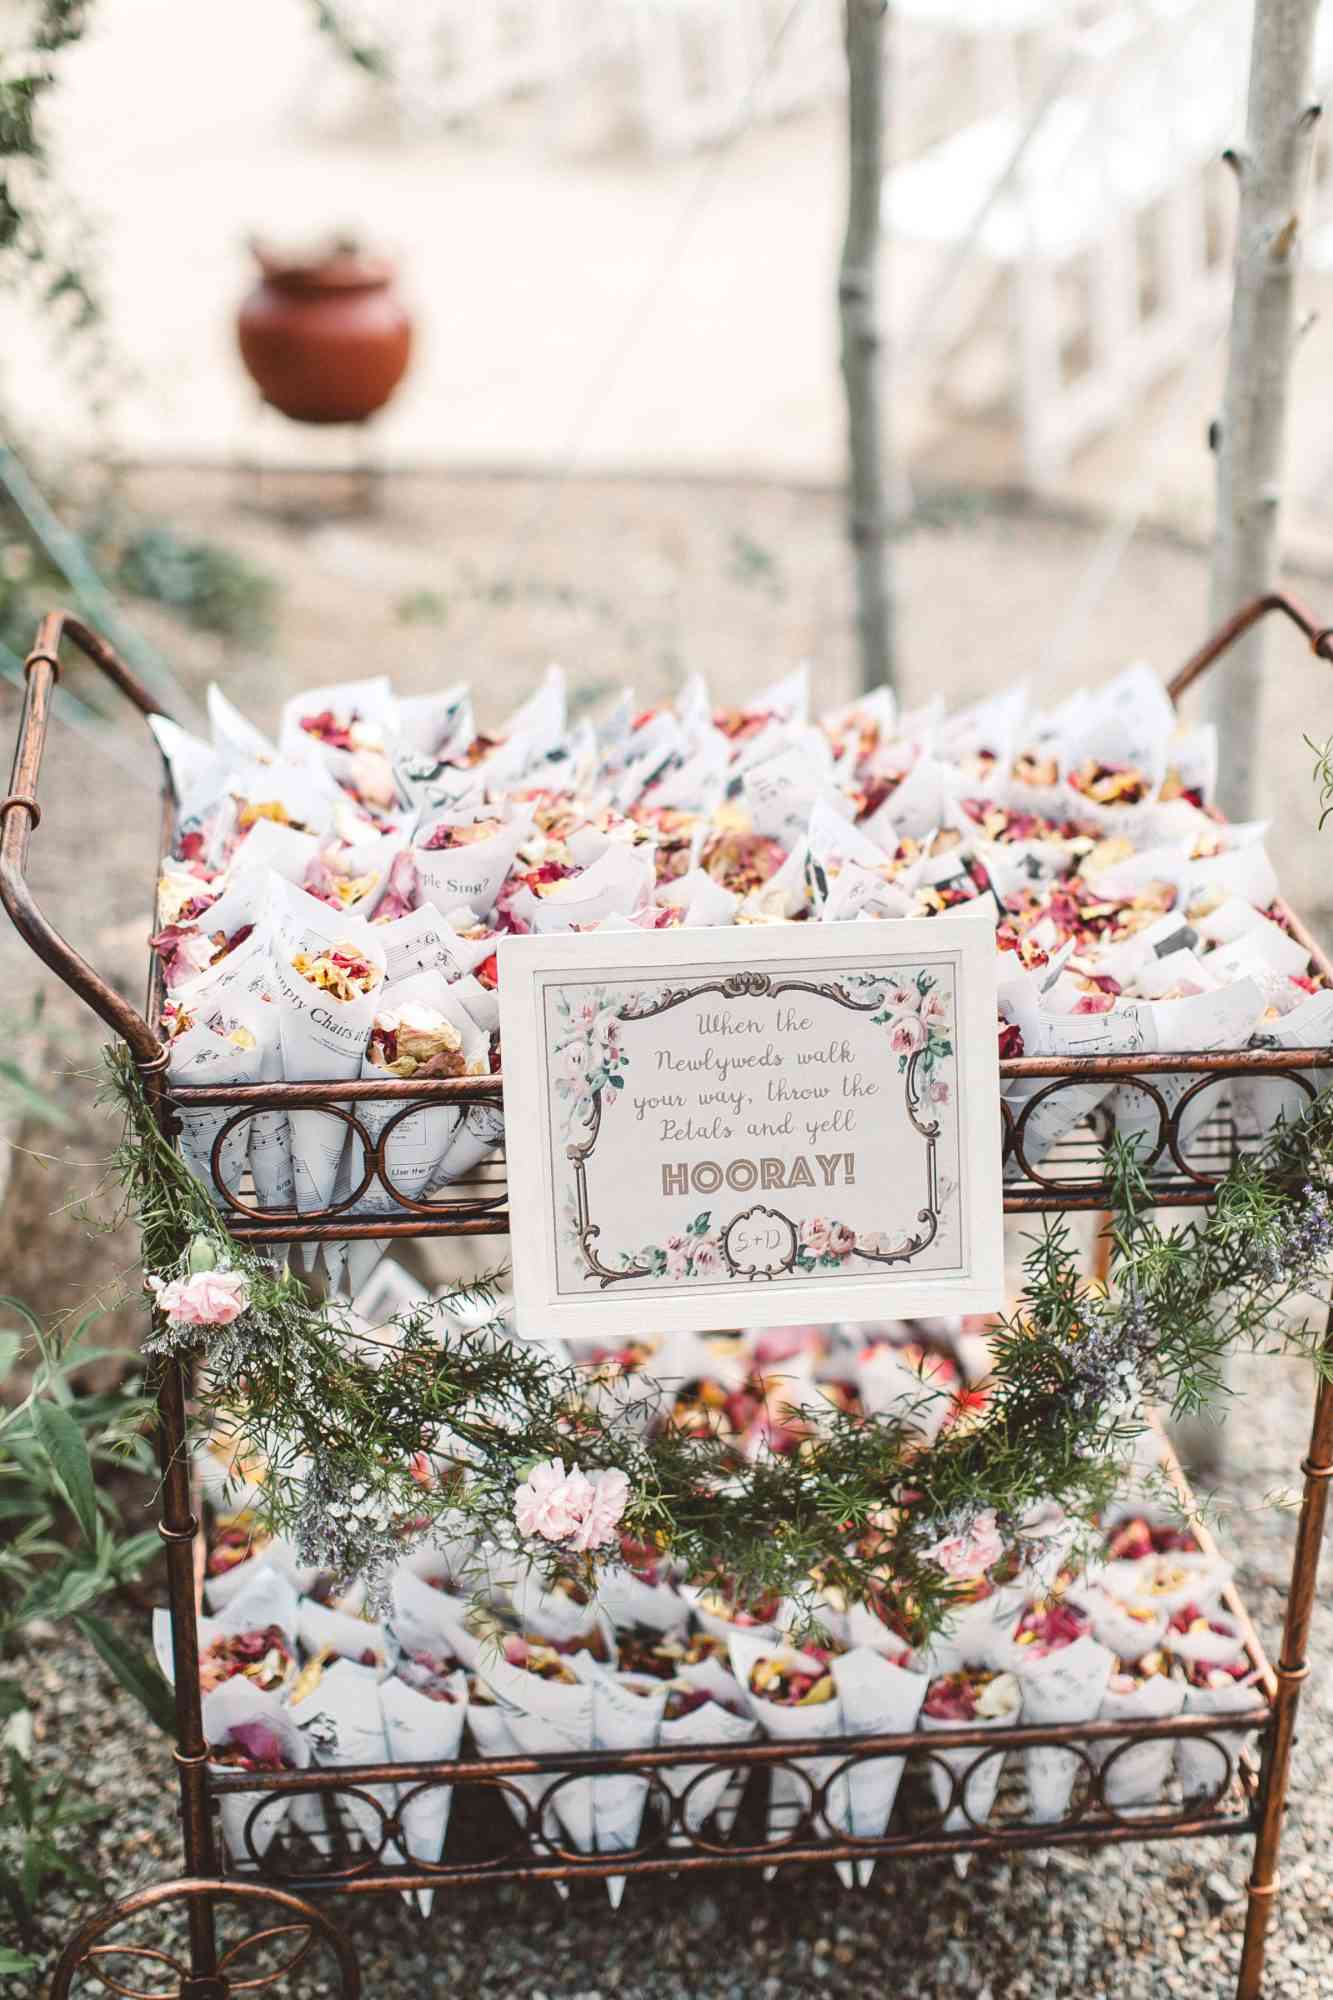 Wedding Flower Petal Bar, Flower Petals in Brass Cart